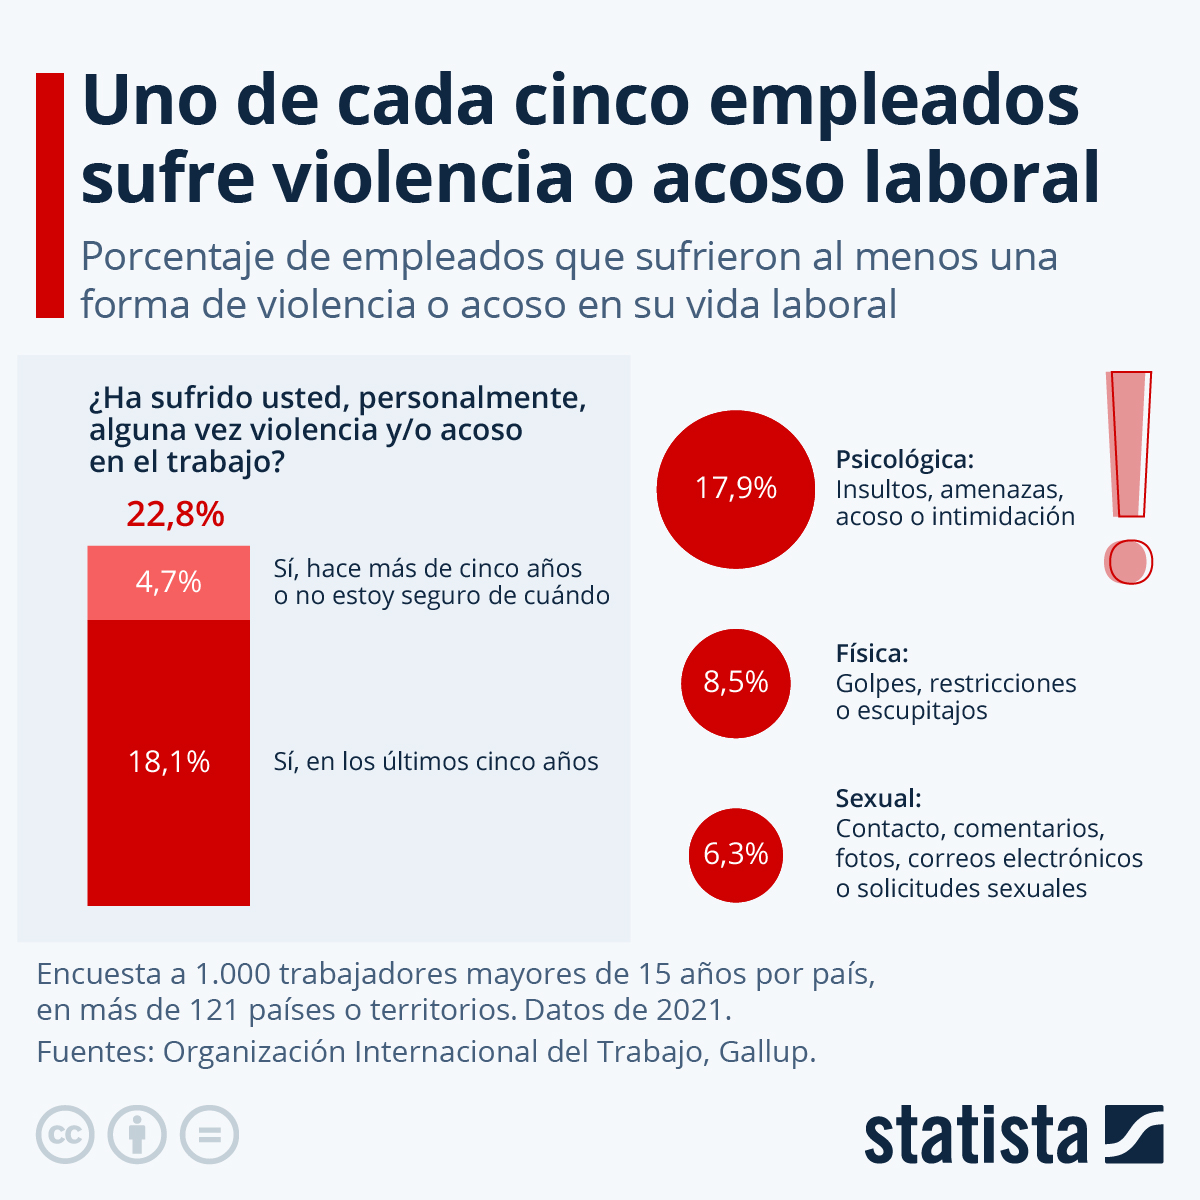 #Cifras | Uno de cada cinco trabajadores en el mundo sufre violencia o acoso laboral